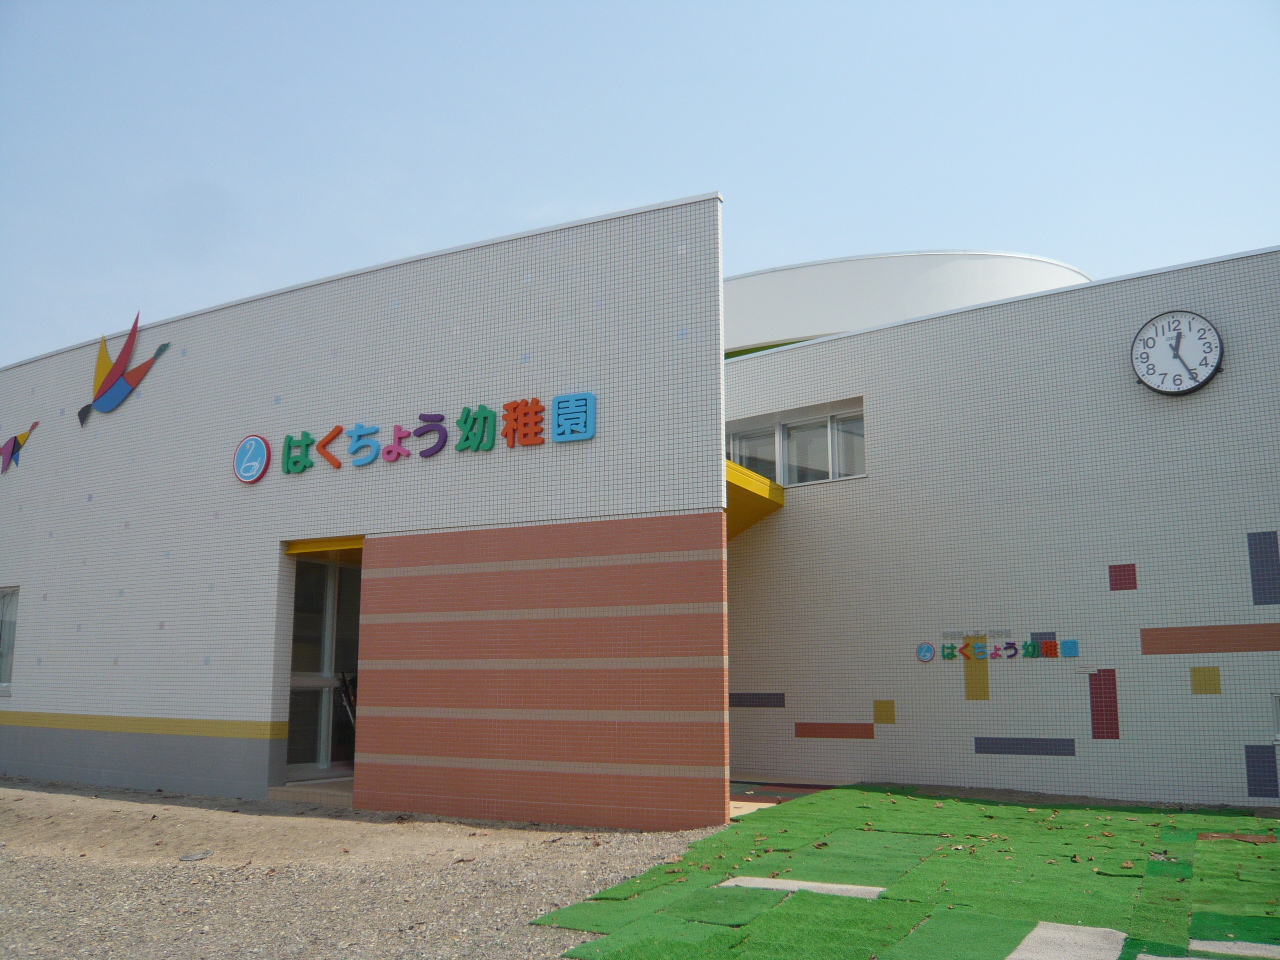 kindergarten ・ Nursery. Swan kindergarten (kindergarten ・ 1107m to the nursery)